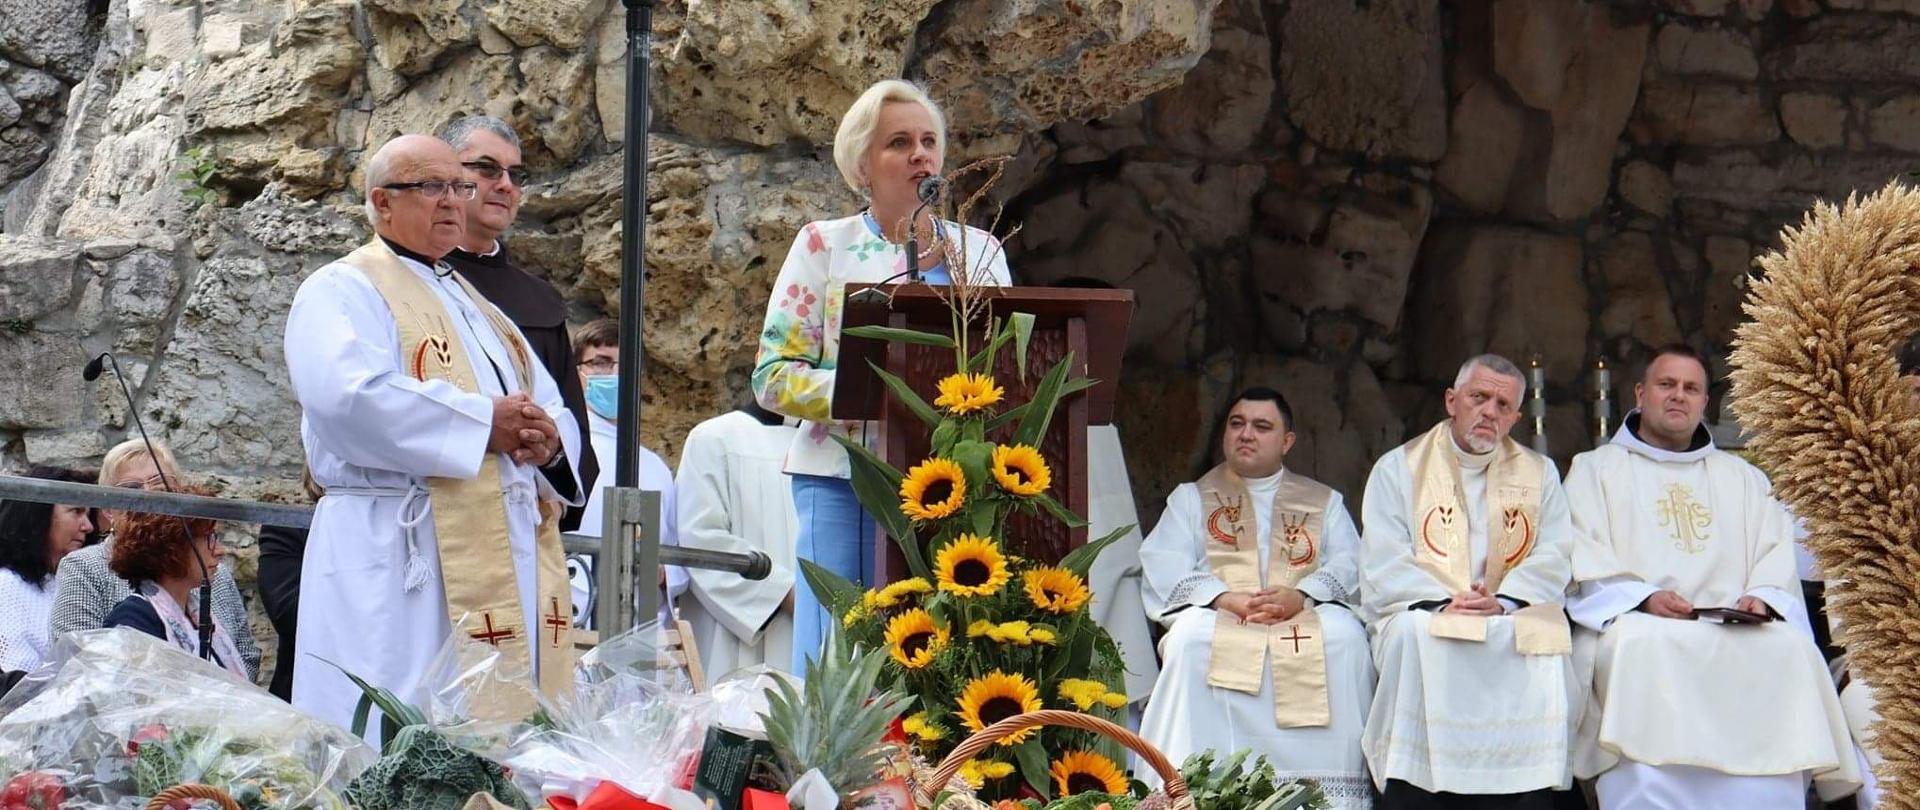 Podczas uroczystości Teresa Barańska podziękowała rolnikom, w centrum przemawiająca Teresa Barańska, przed nią kompozycja kwiatów słonecznika, po lewej i prawej stronie przysłuchujący się ludzie, z tyłu grota świętej Anny